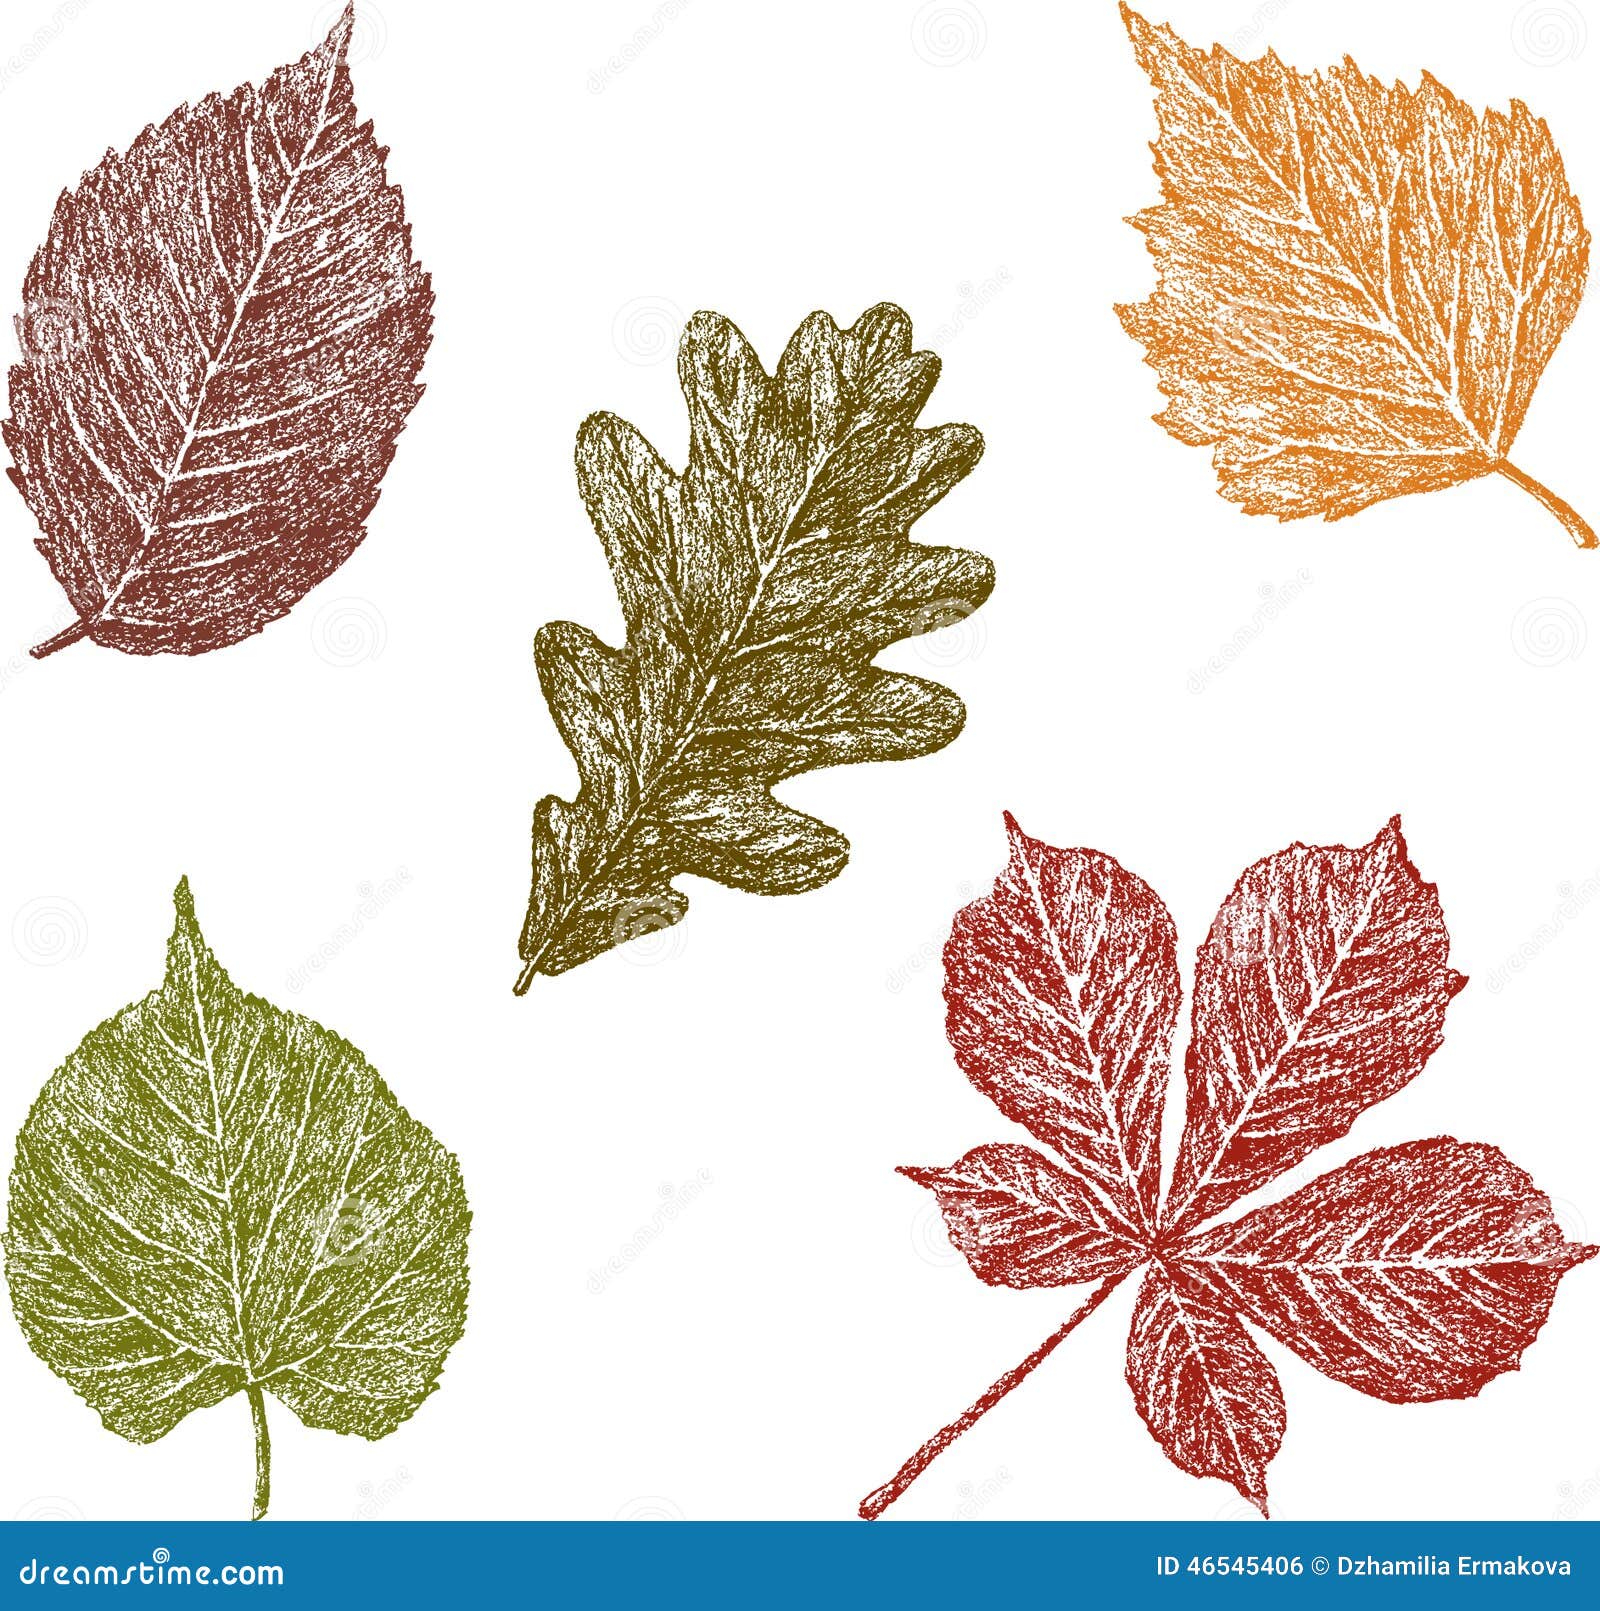 Зарисовки листьев разных пород деревьев